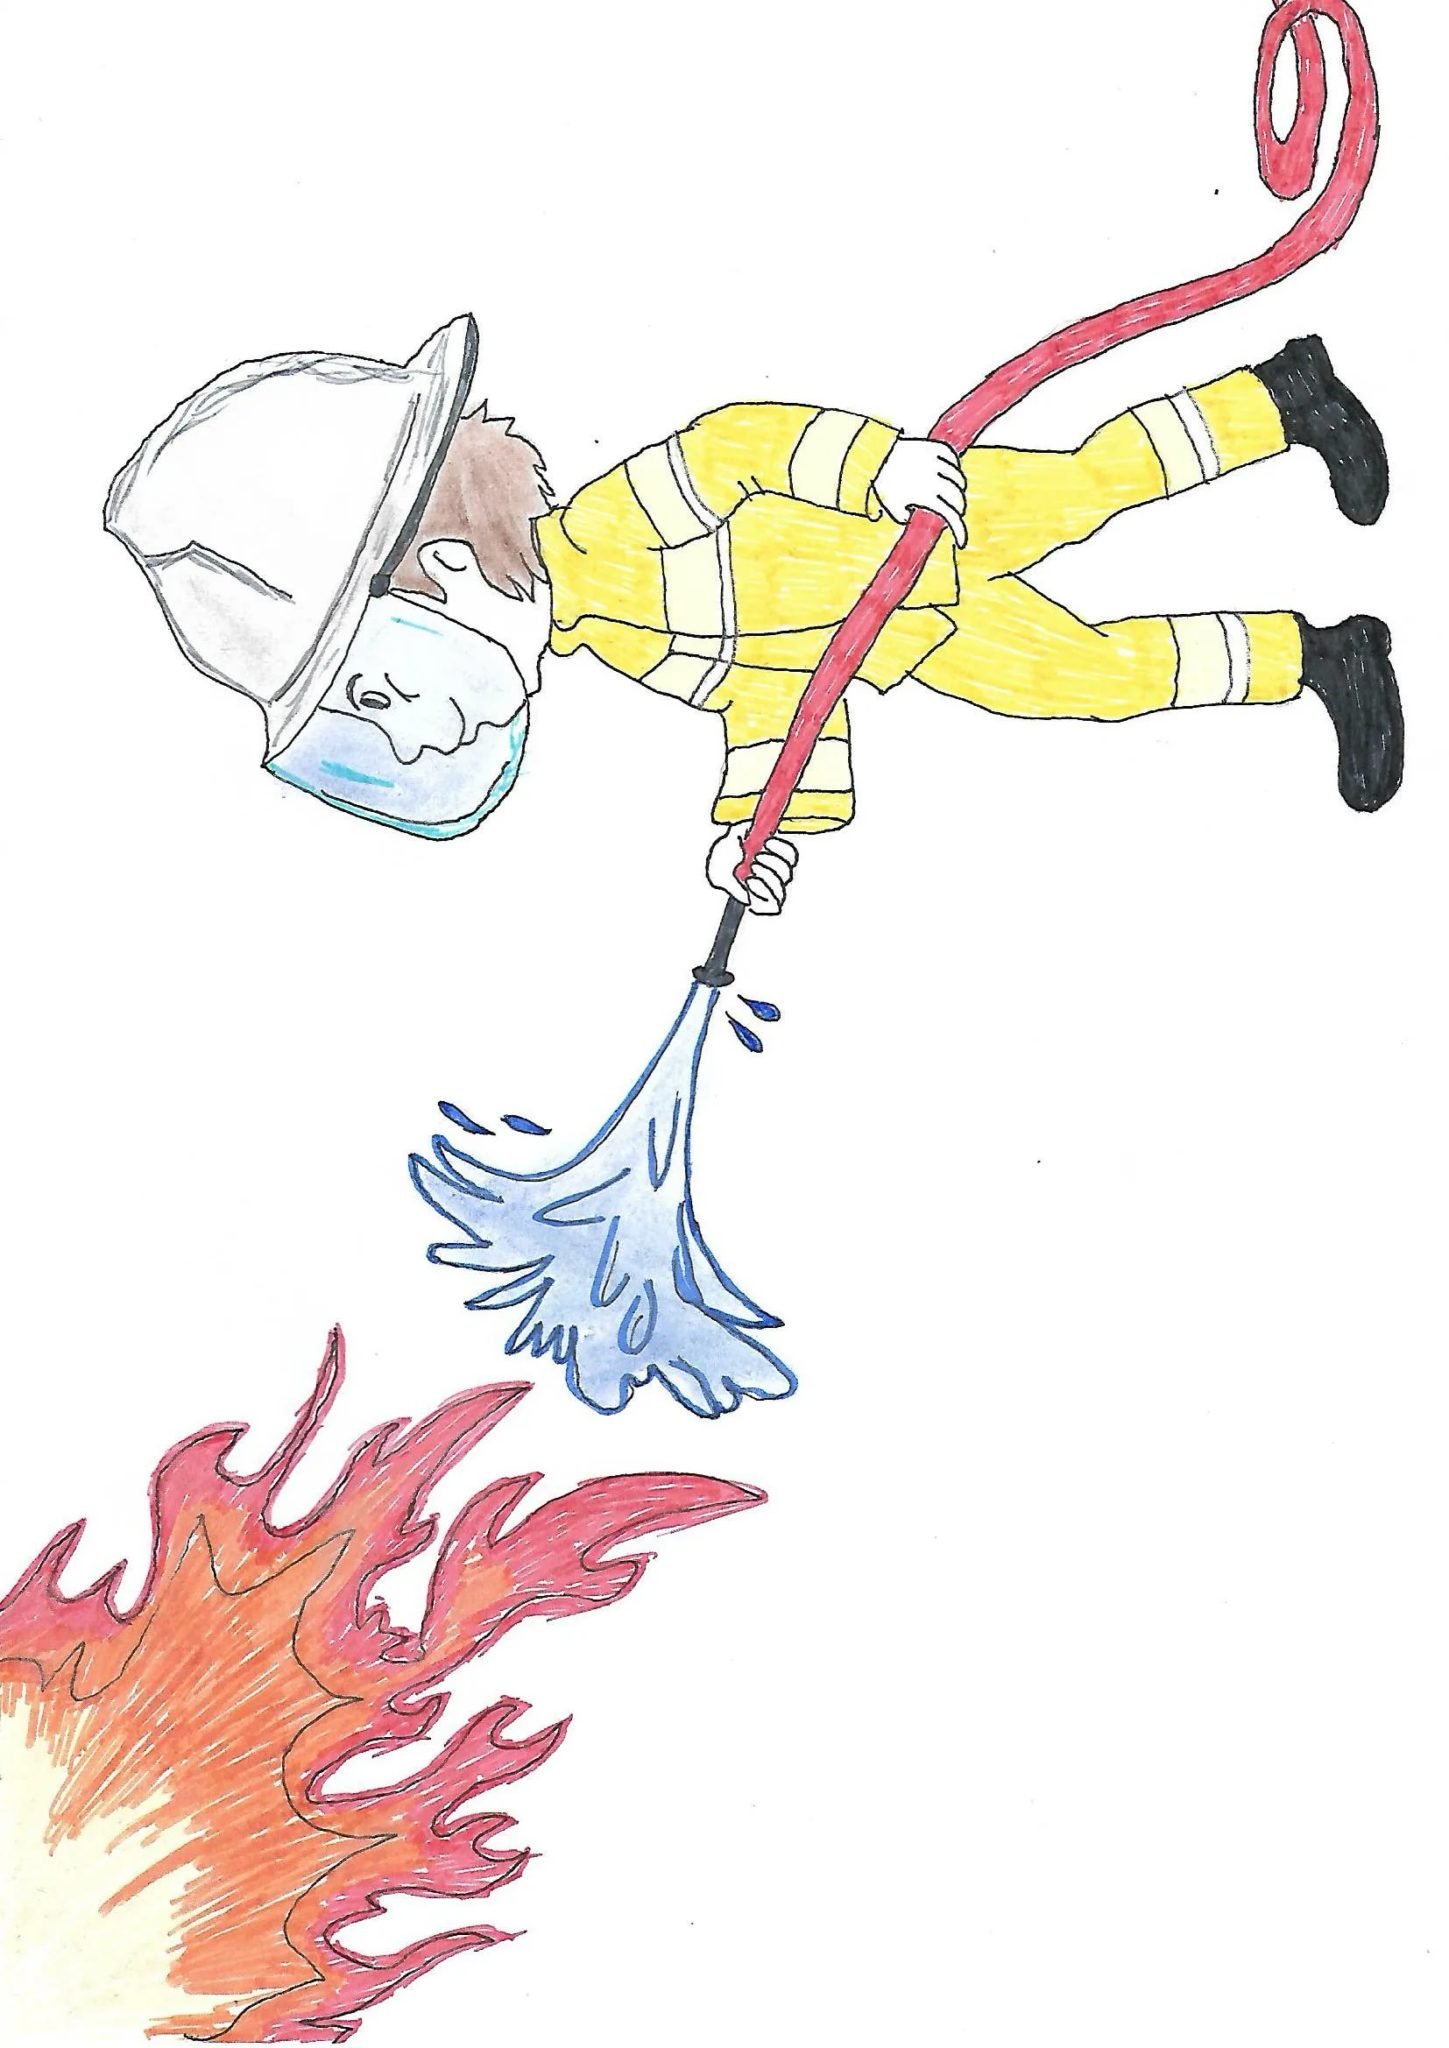 Картинки пожарных для срисовки